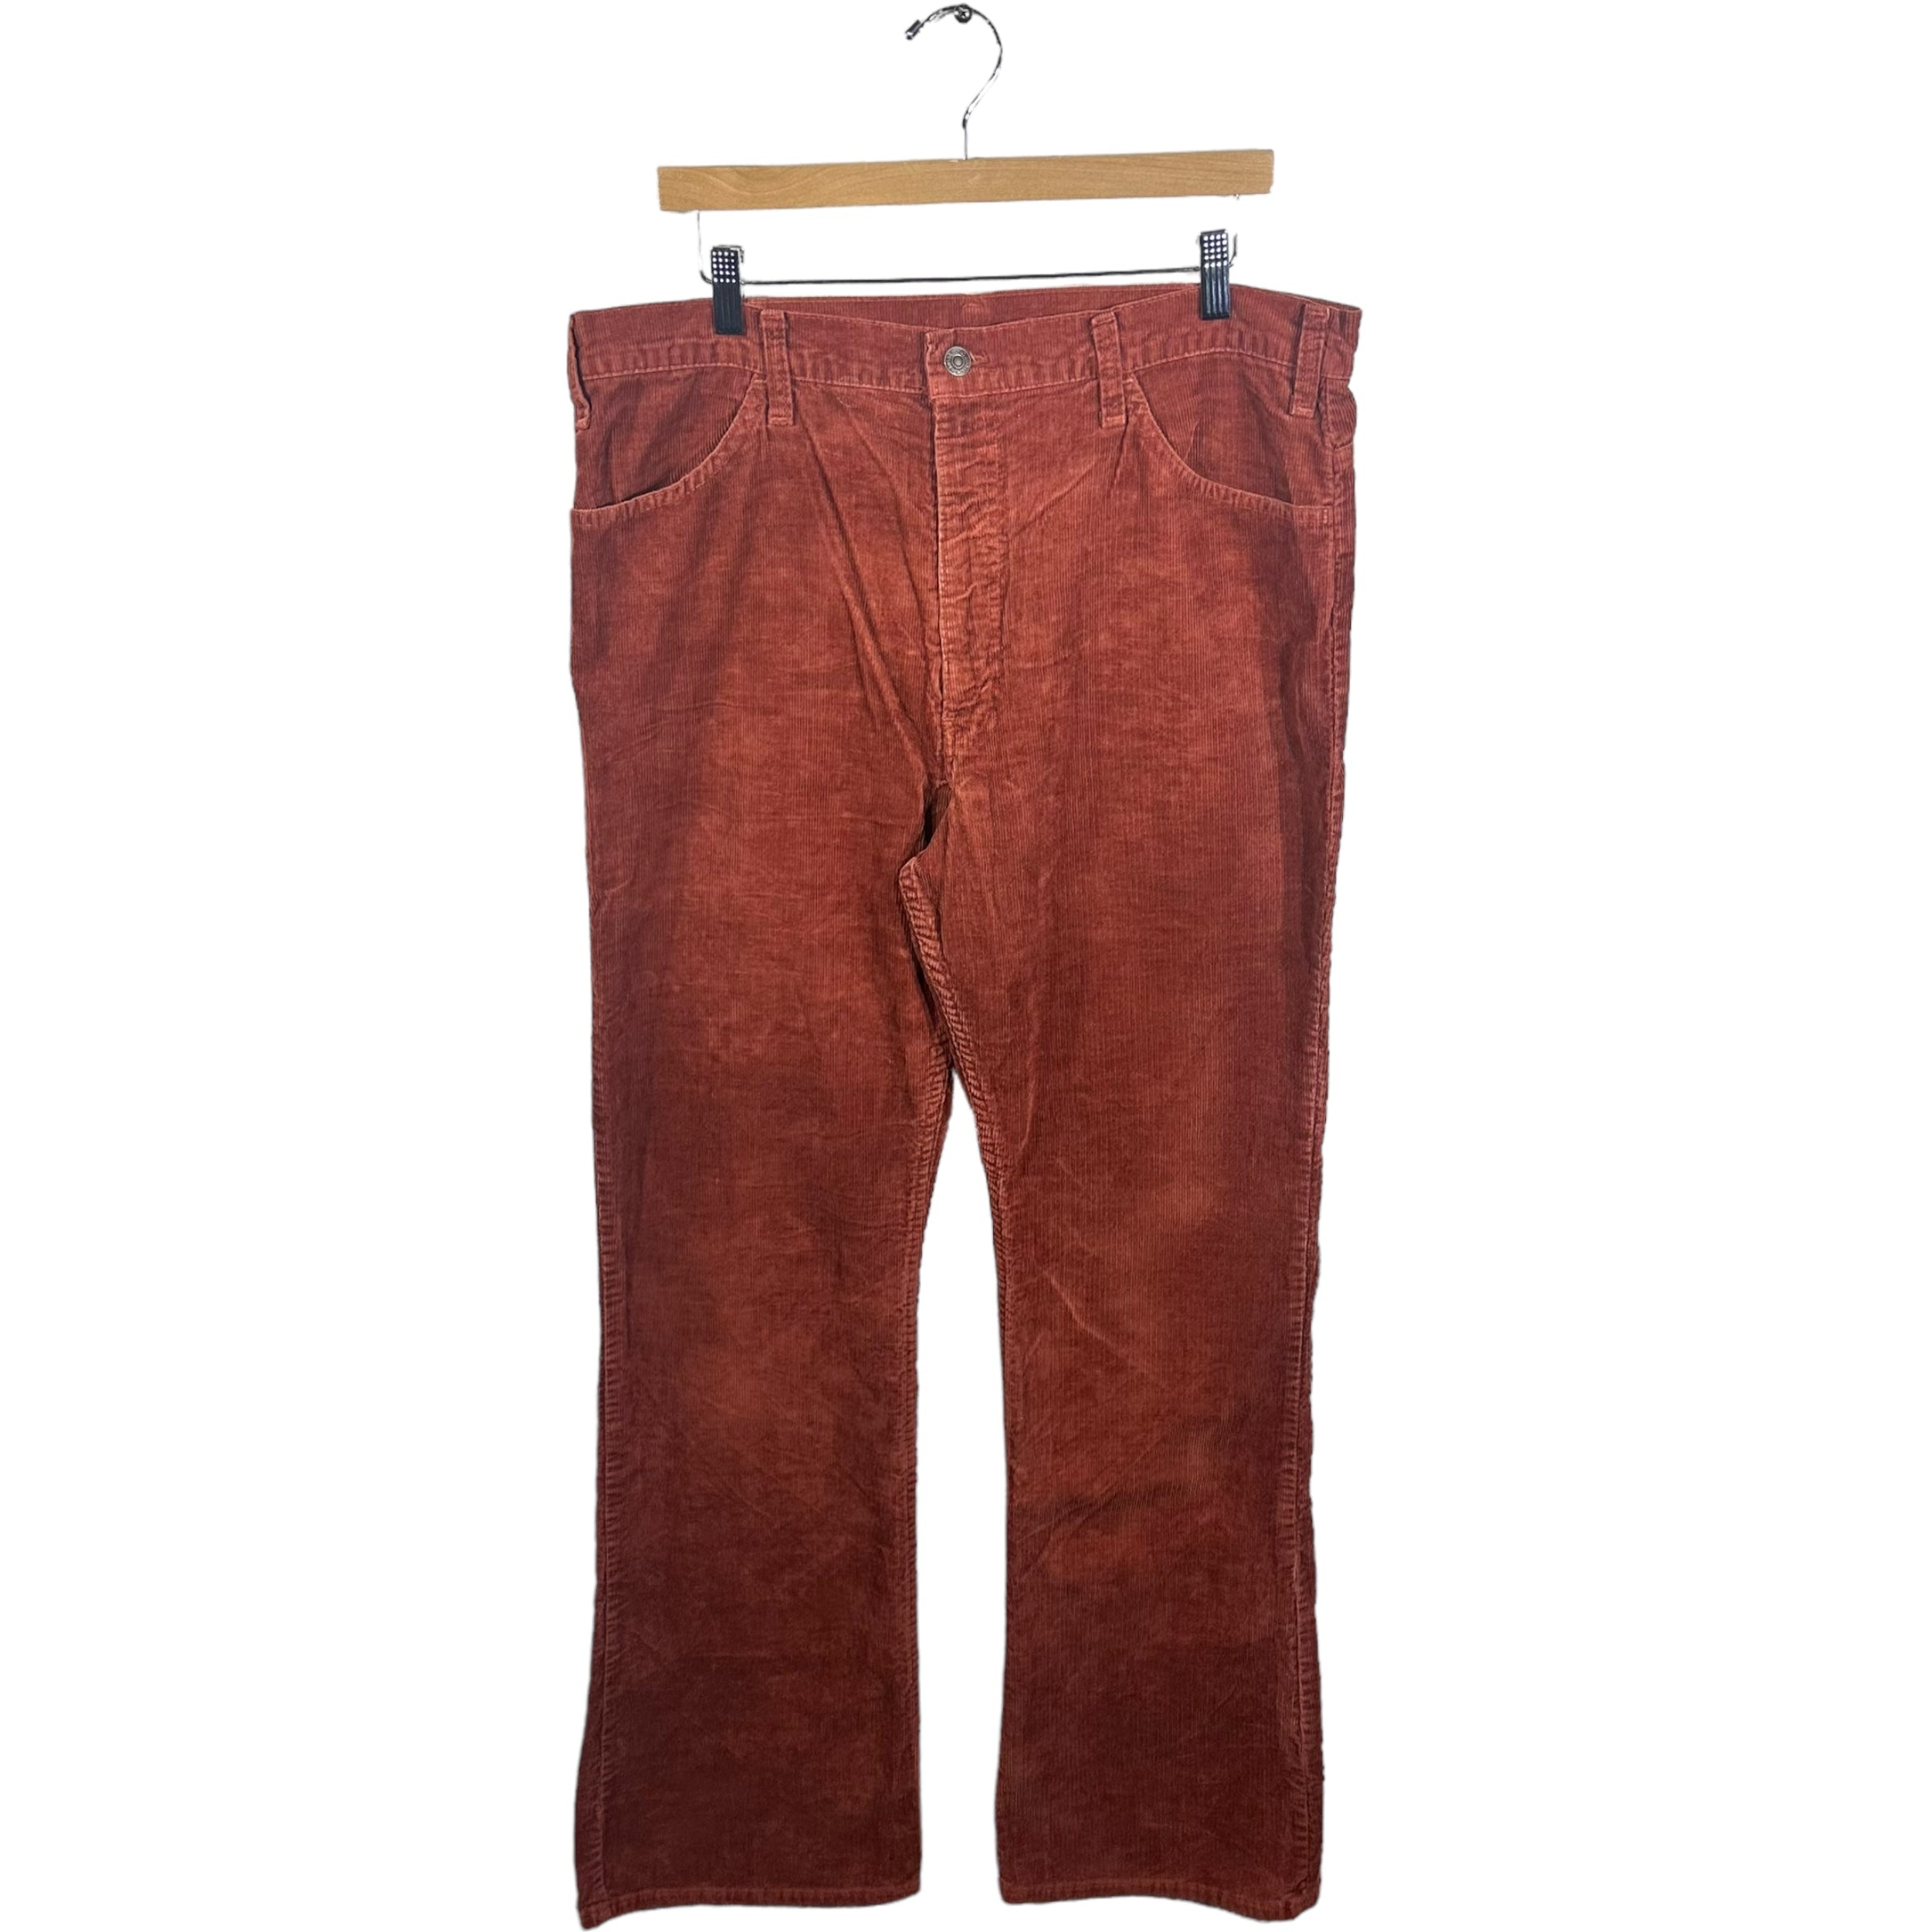 Vintage Levis Corduroy Pants